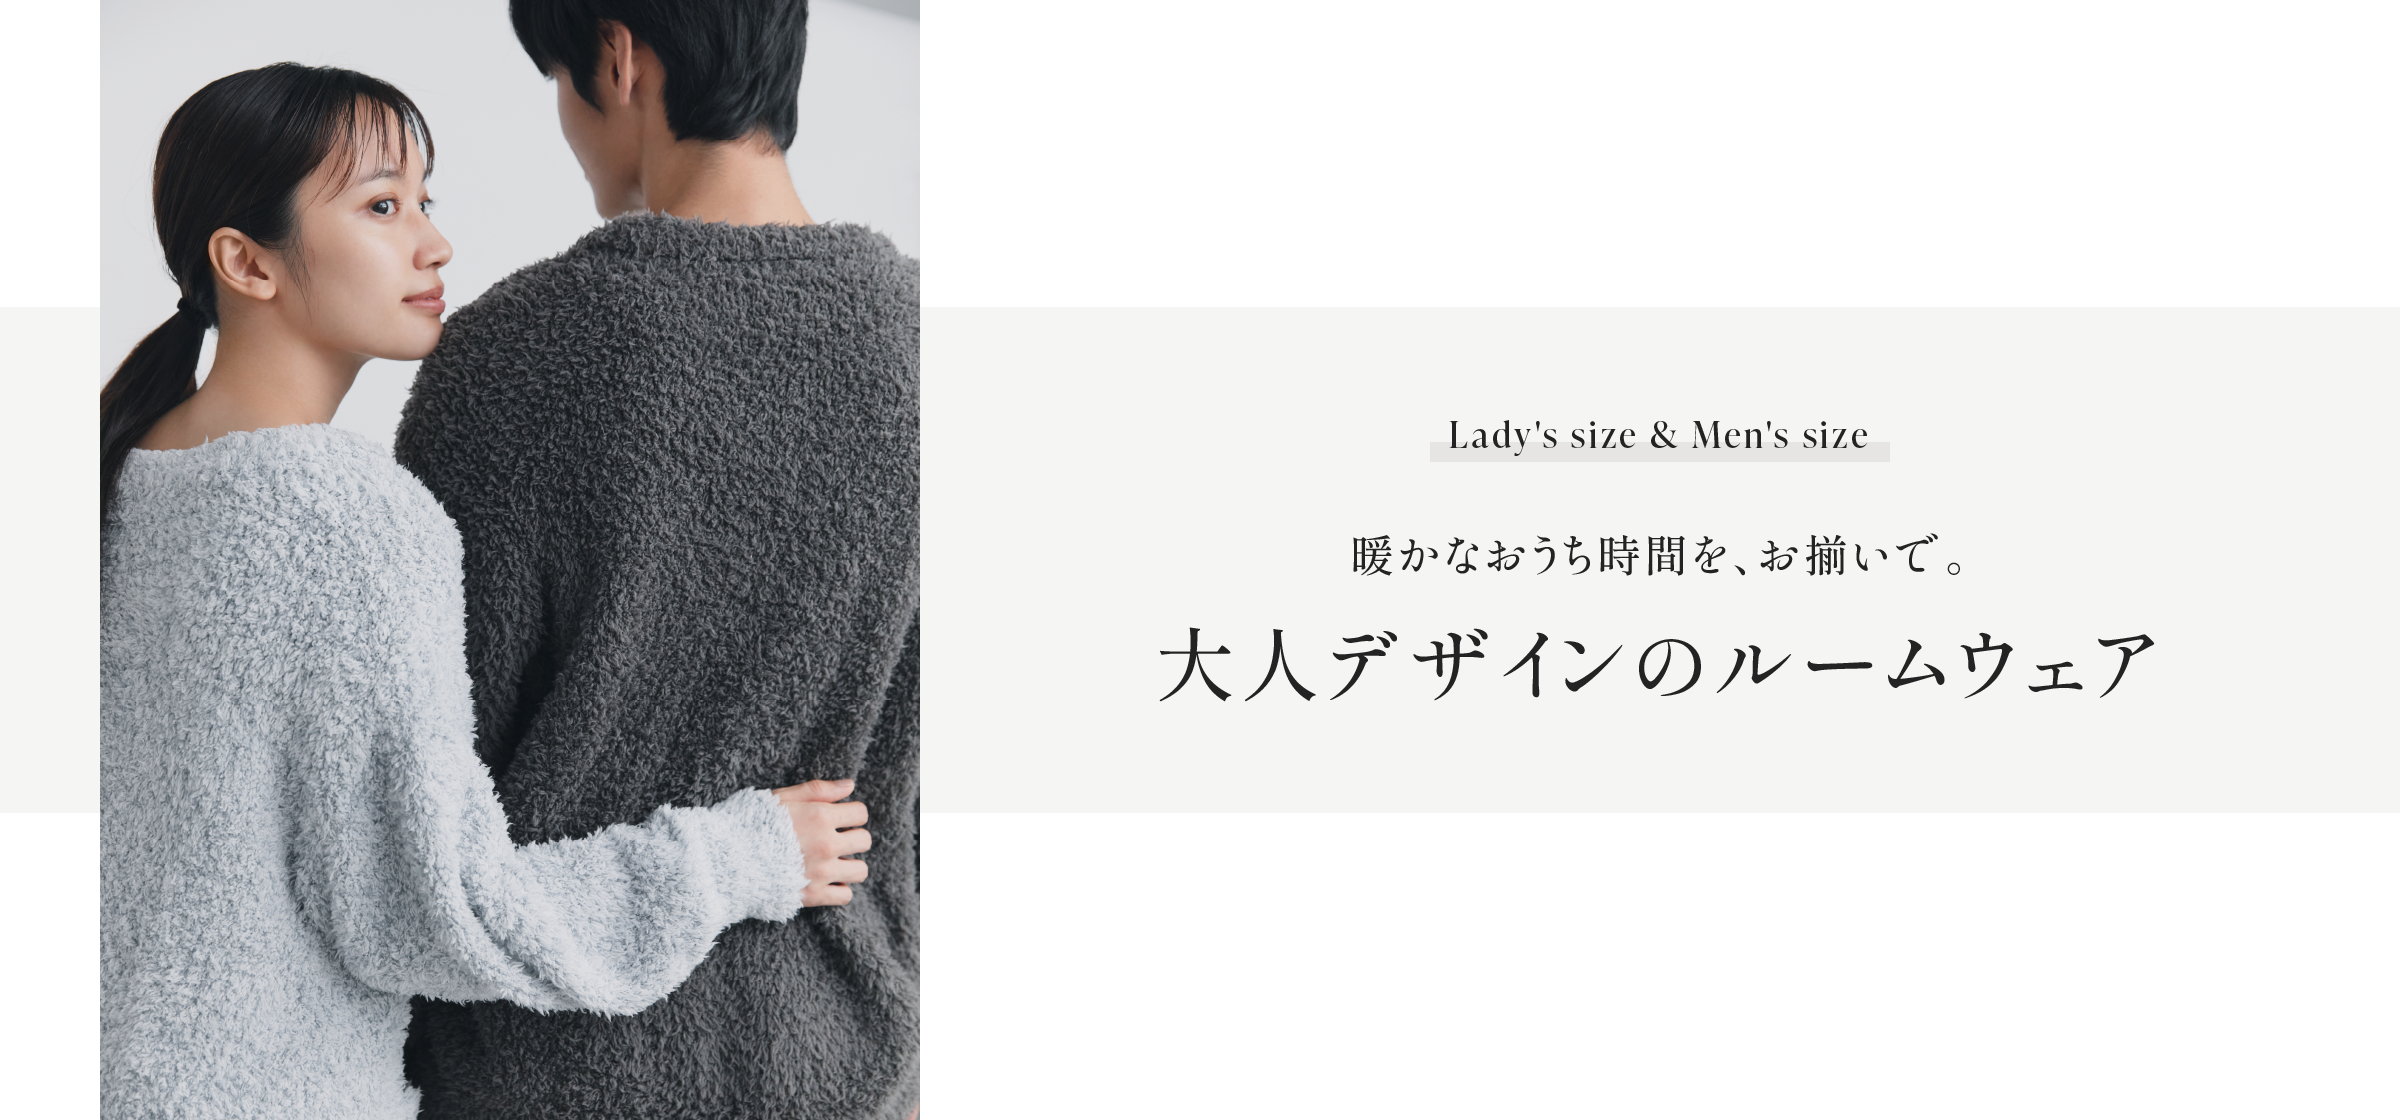 Lady's size & Men's size, 暖かなおうち時間を、お揃いで。大人デザインのルームウェア